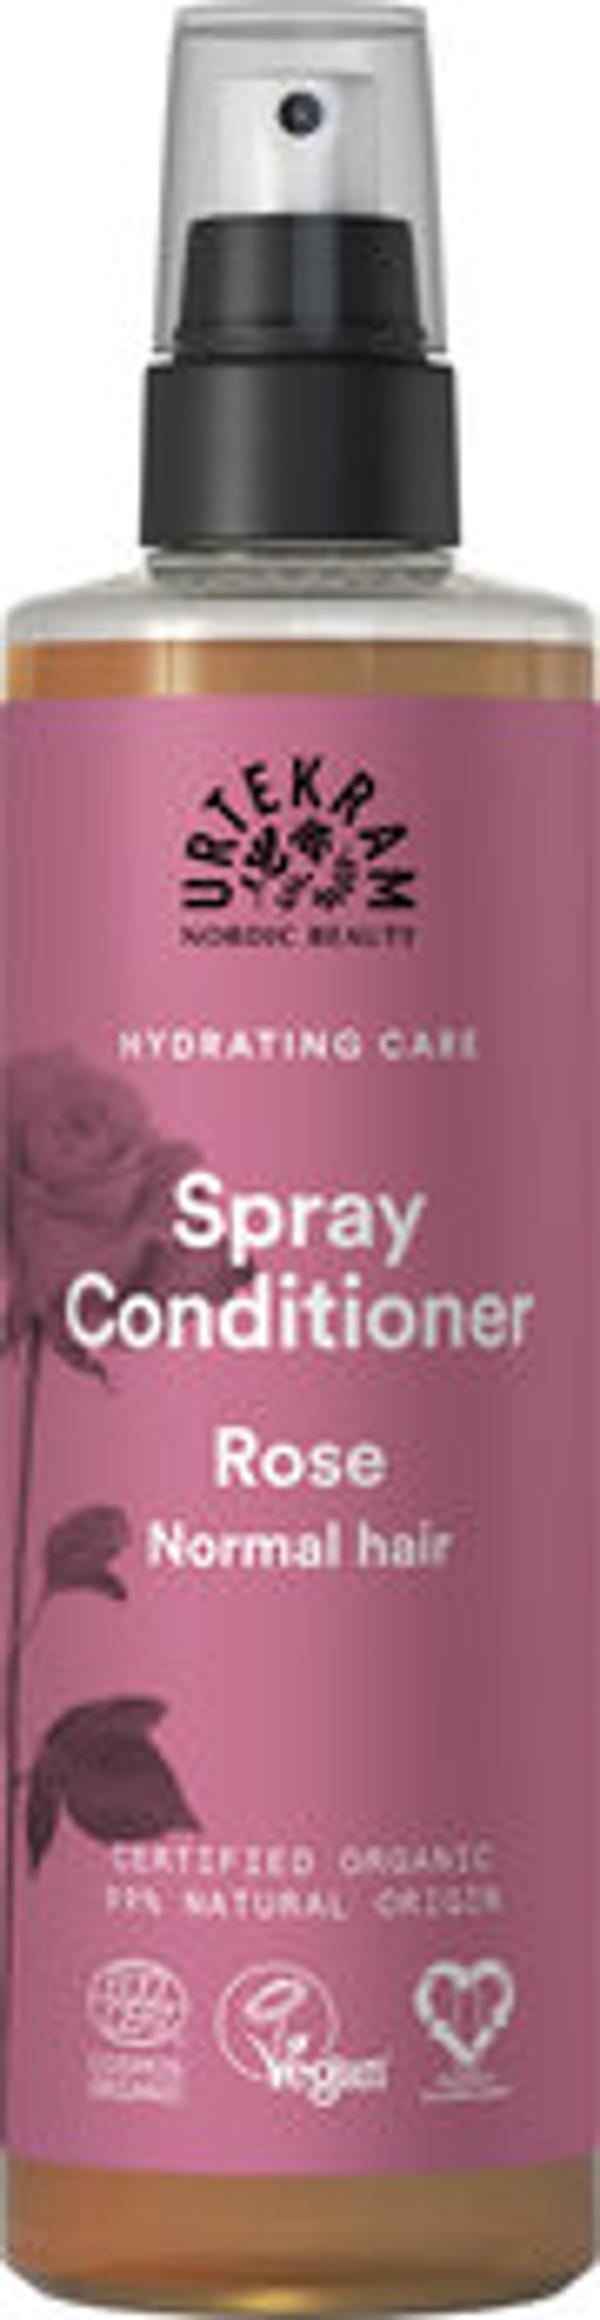 Produktfoto zu Revitalizing Rose Spray Conditioner